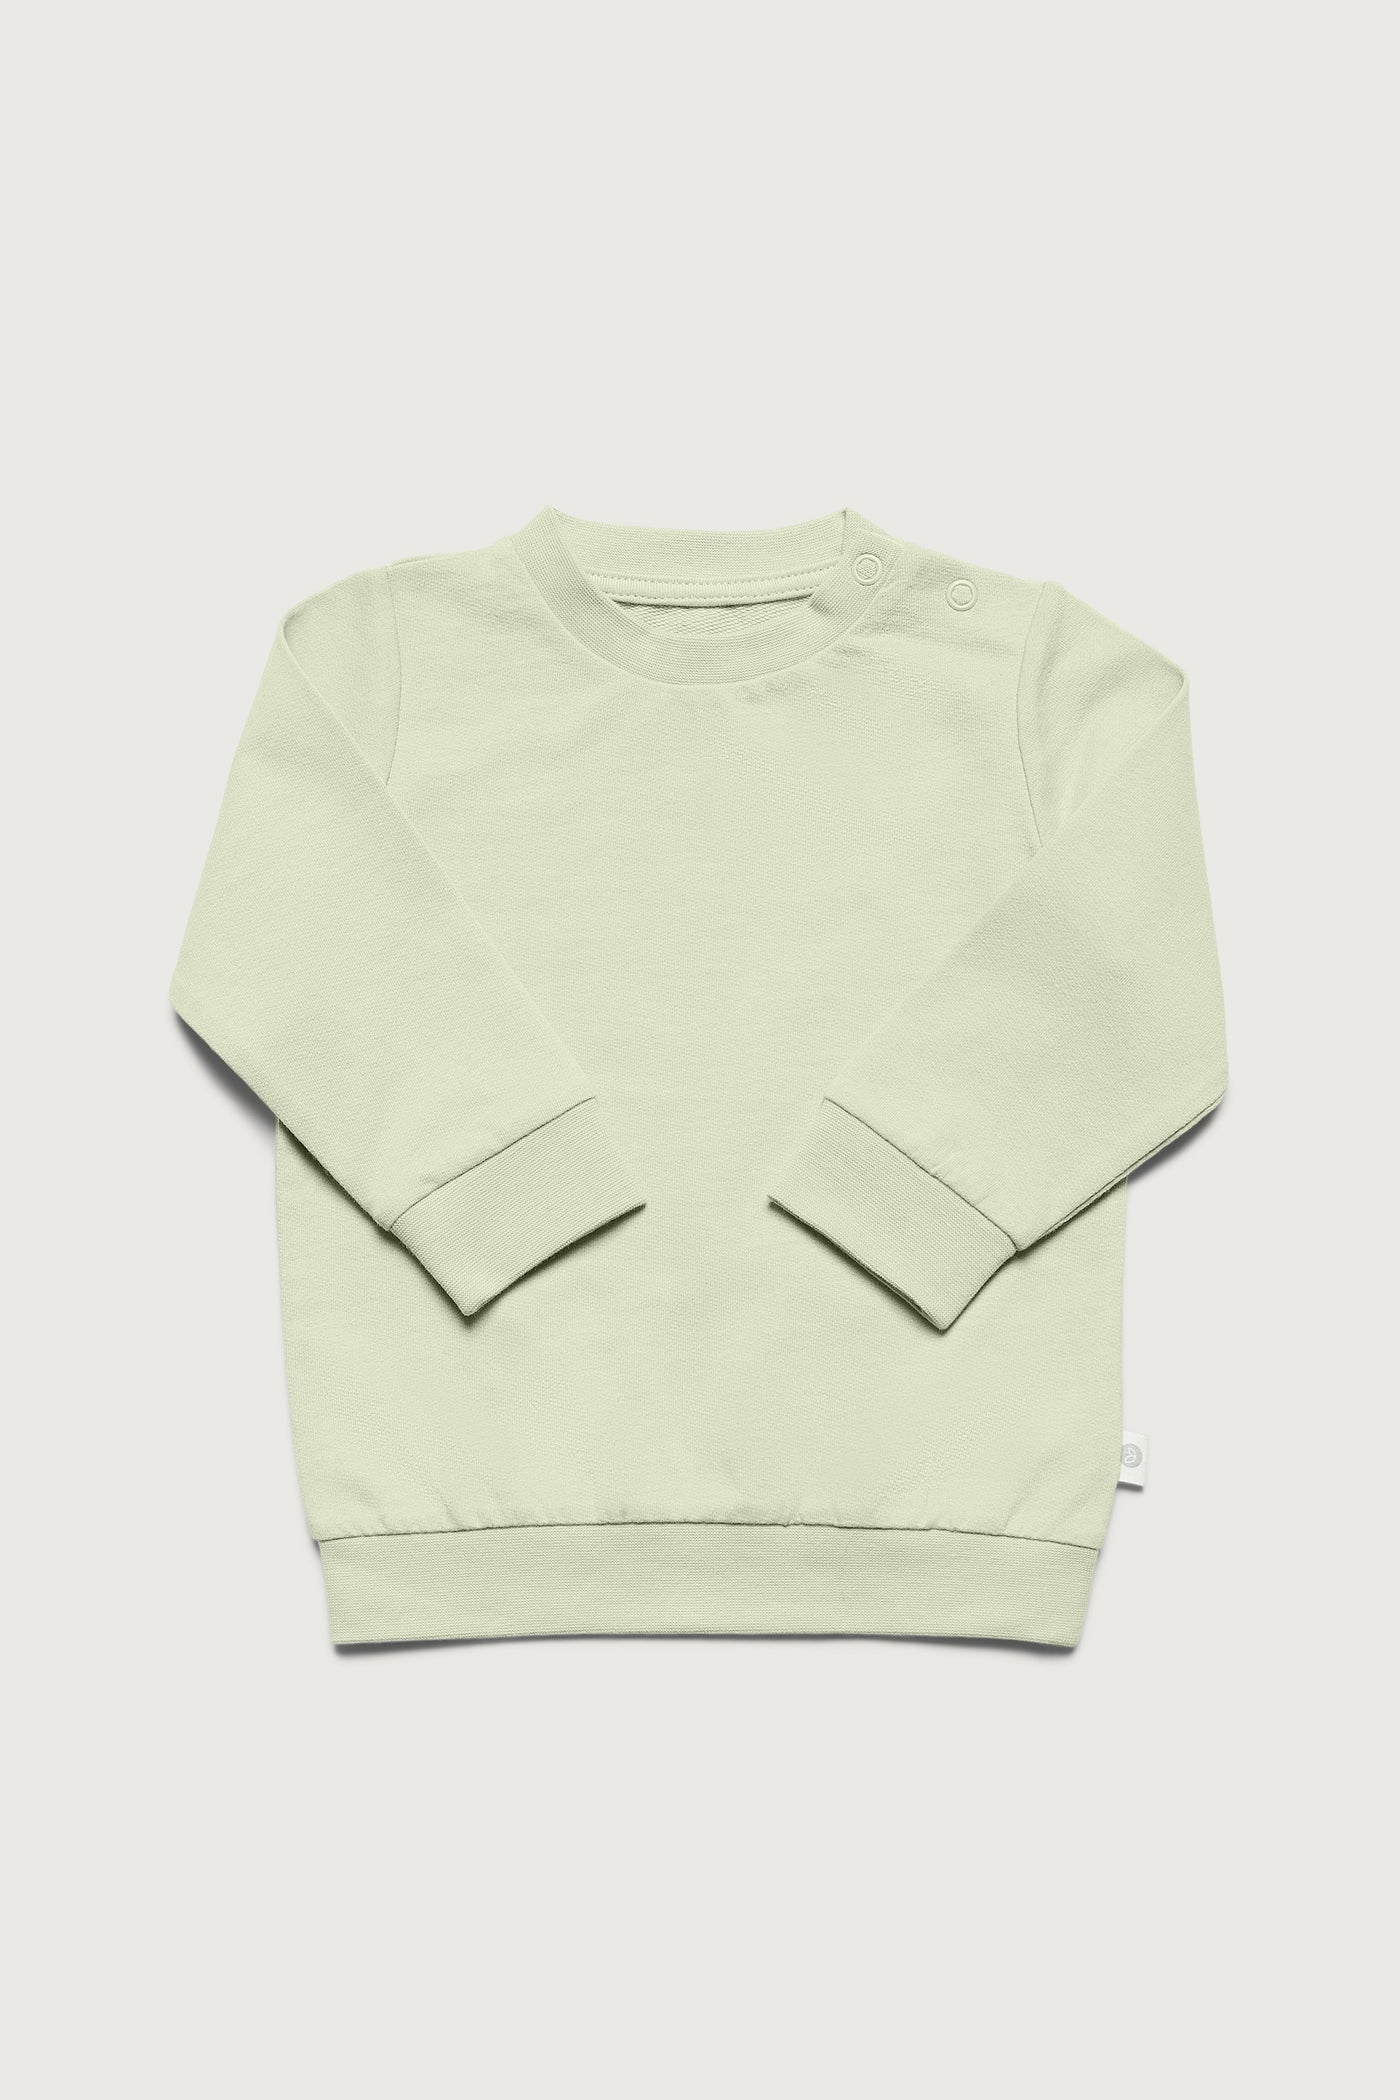 Grøn sweatshirt i fleece og med trykknapper ved skulderen i GOTS-certificeret økologisk bomuld fra Organic Lullaby. 